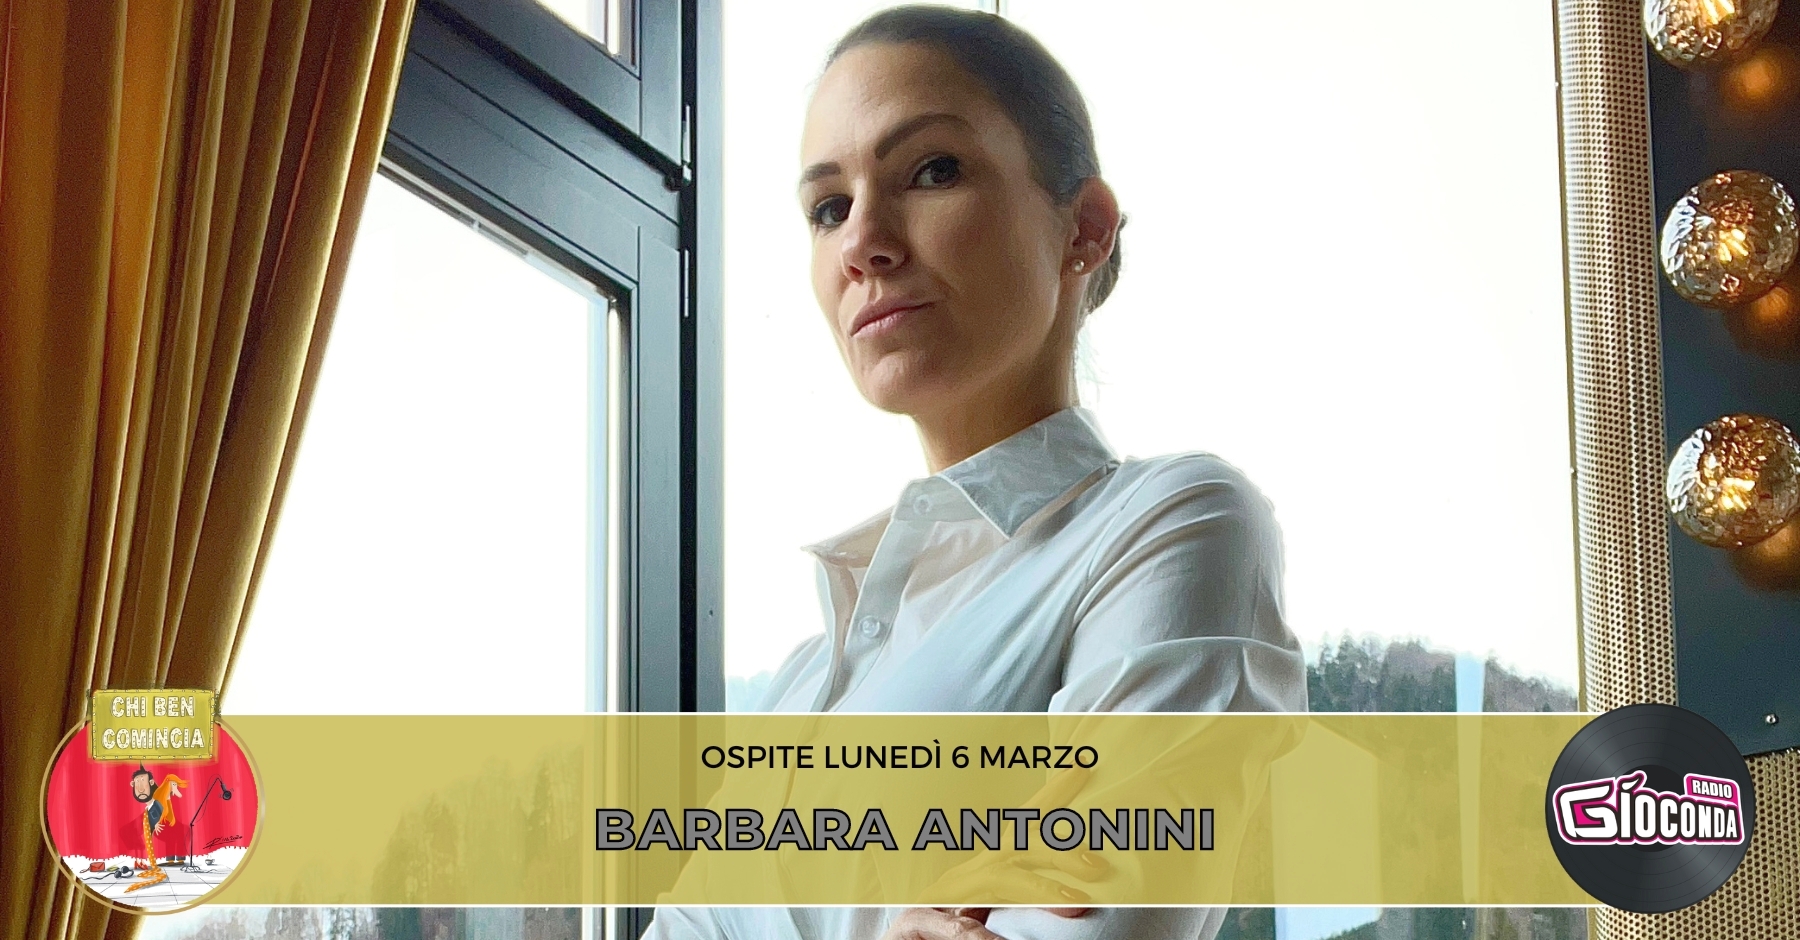 La maître Barbara Antonini, nuovo volto della trasmissione televisiva “Primo appuntamento” su Real Time, è l'ospite della nuova puntata di "Chi ben comincia" in onda lunedì 6 marzo alle 18.00.